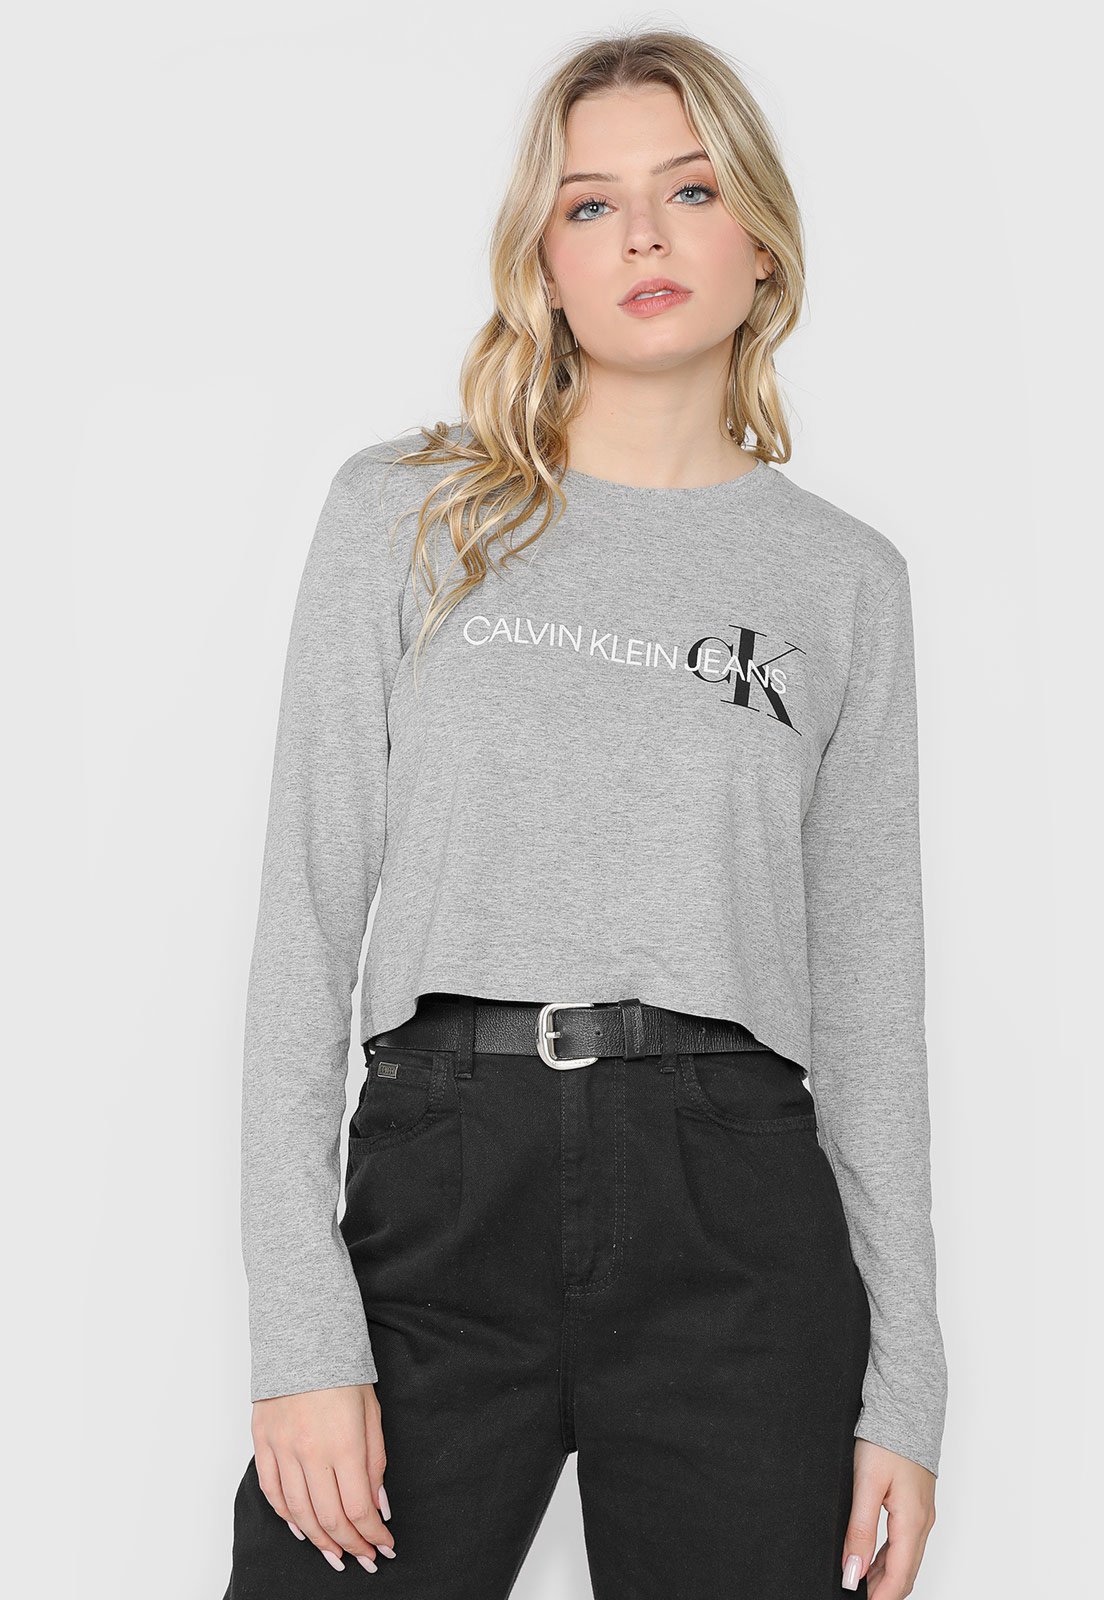 Camiseta Calvin Klein Jeans Logo Cinza - Compre Agora